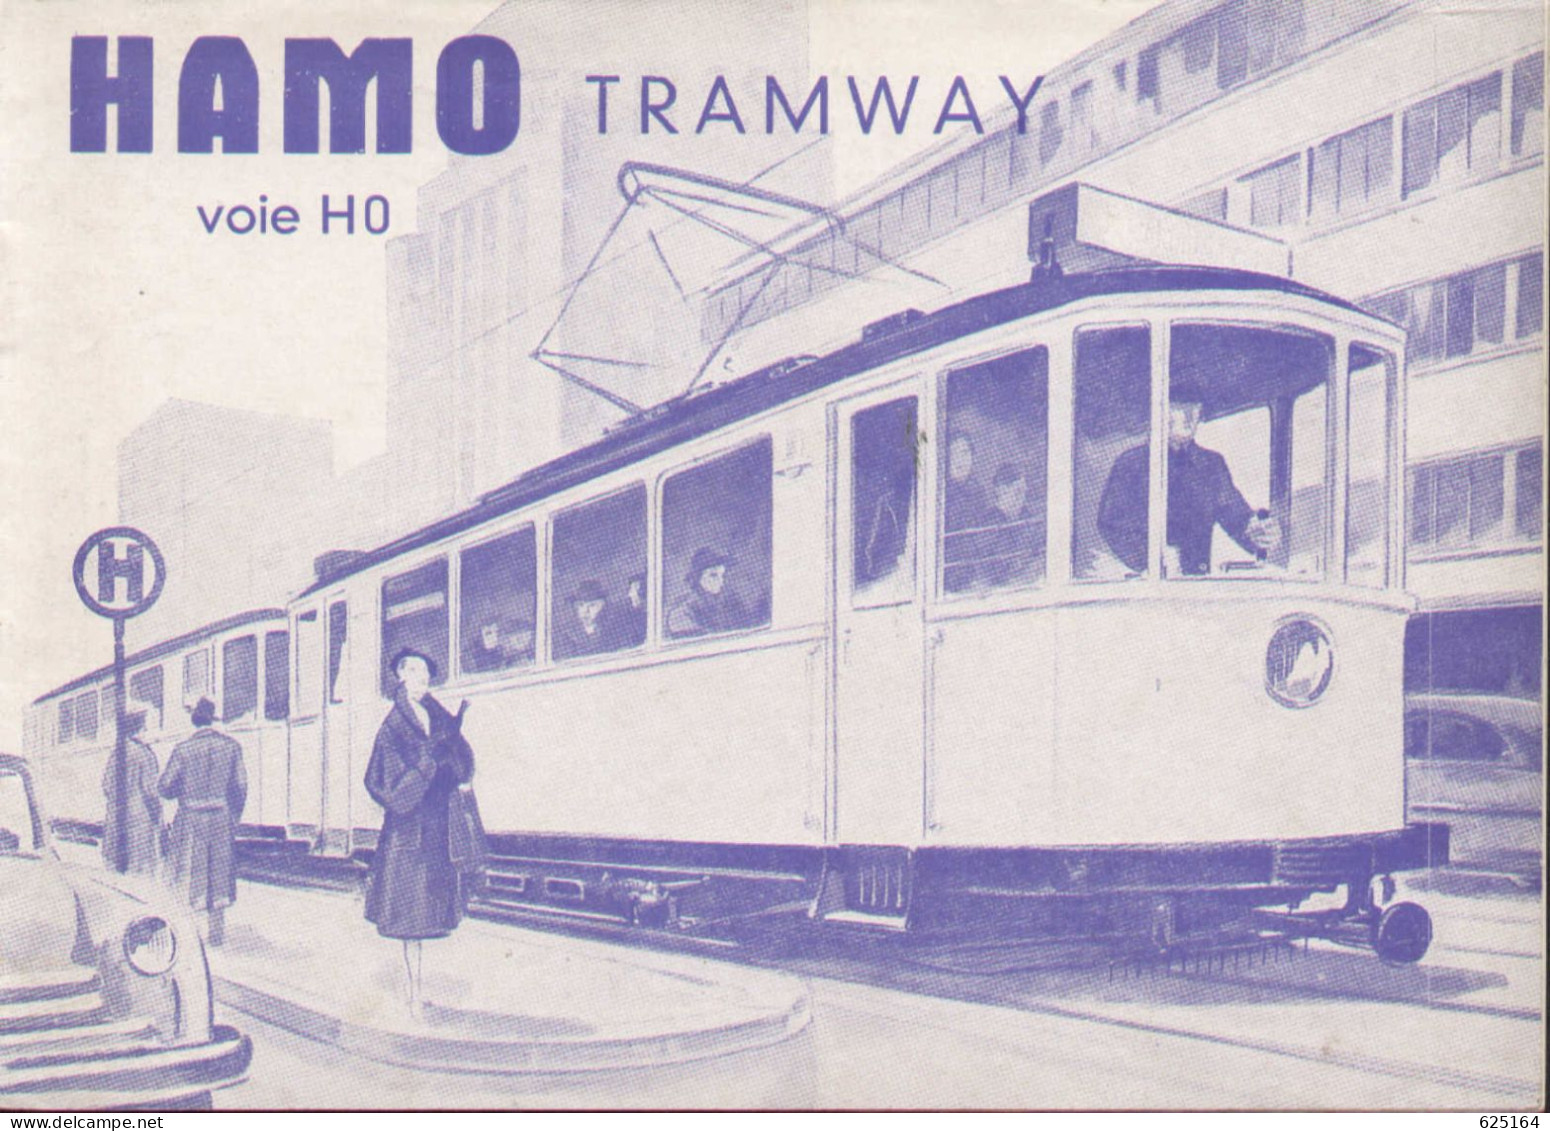 Catalogue HAMO TRAMWAY 1954 Voie HO 1:87 Französische Ausgabe - Francese